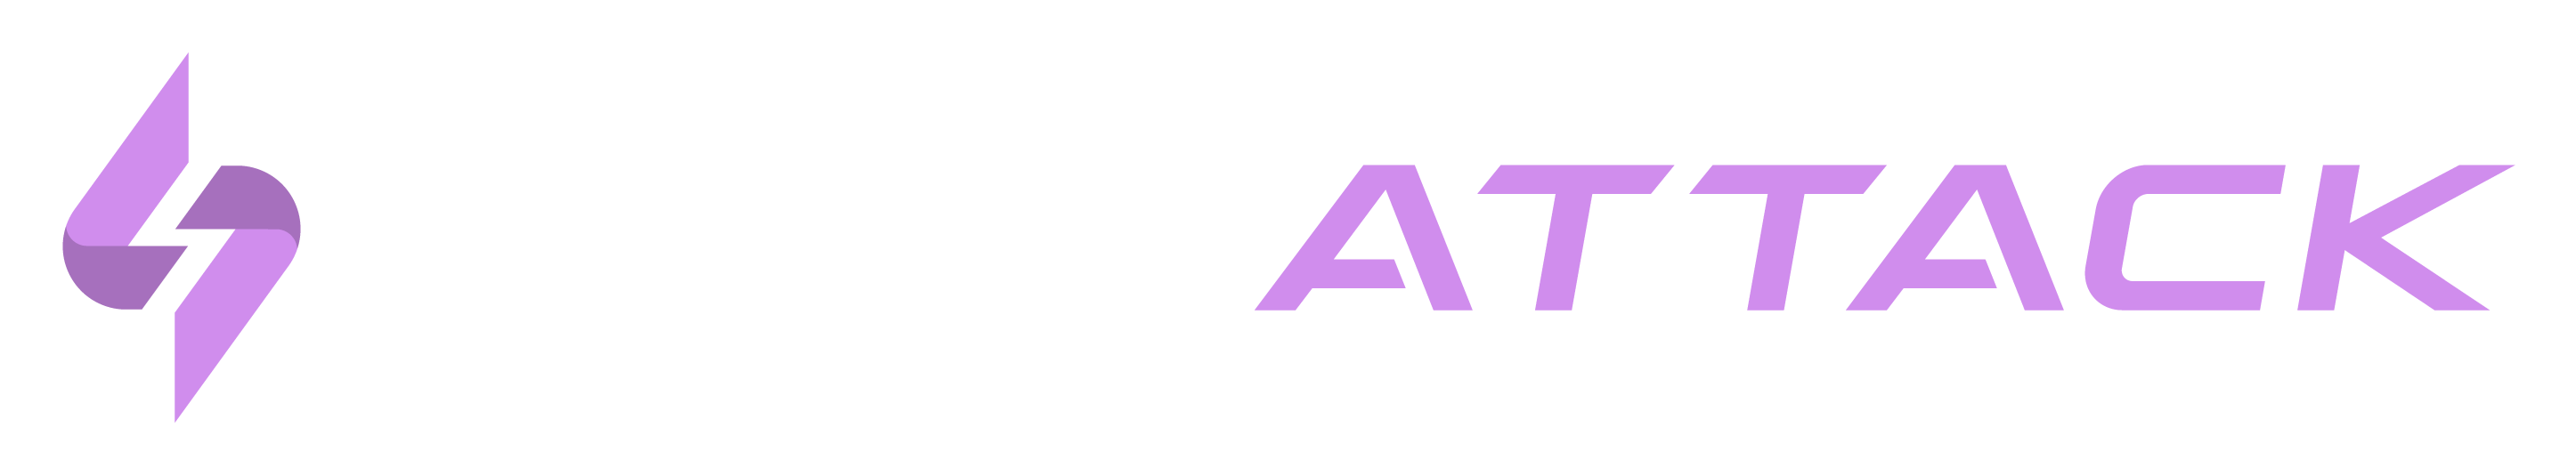 snapattack-logo.png